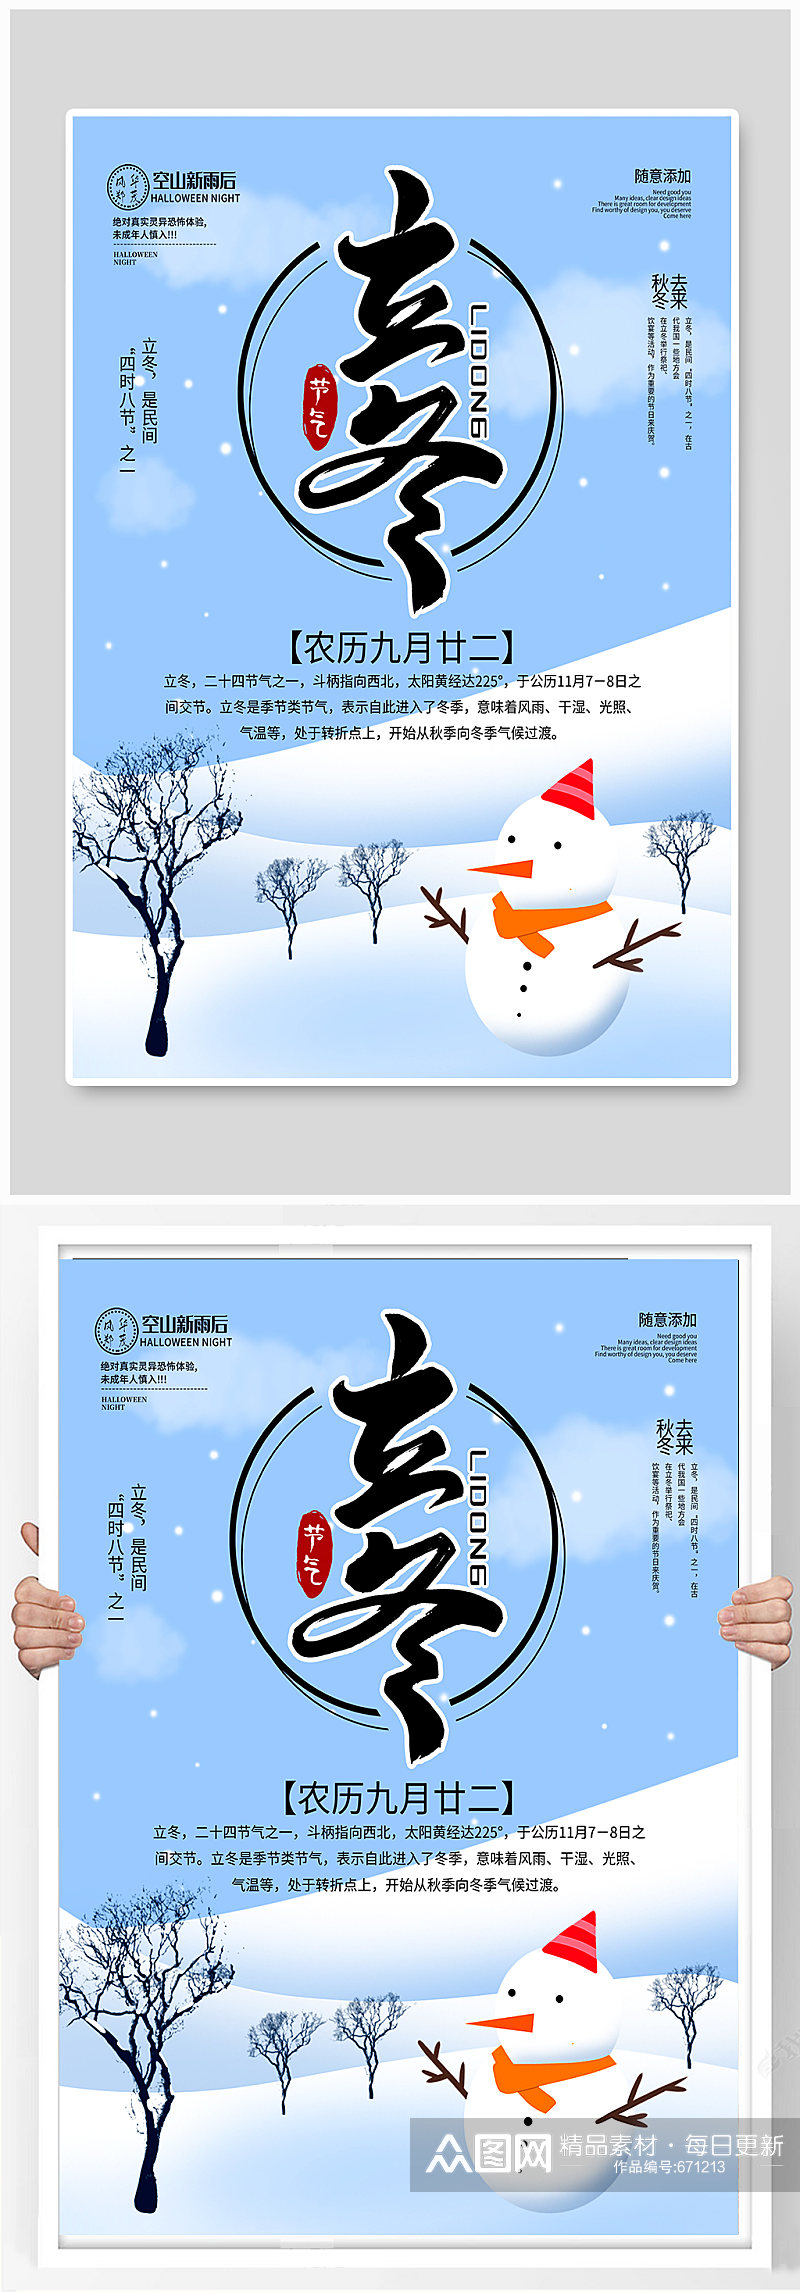 简约原创立冬中国节气海报素材